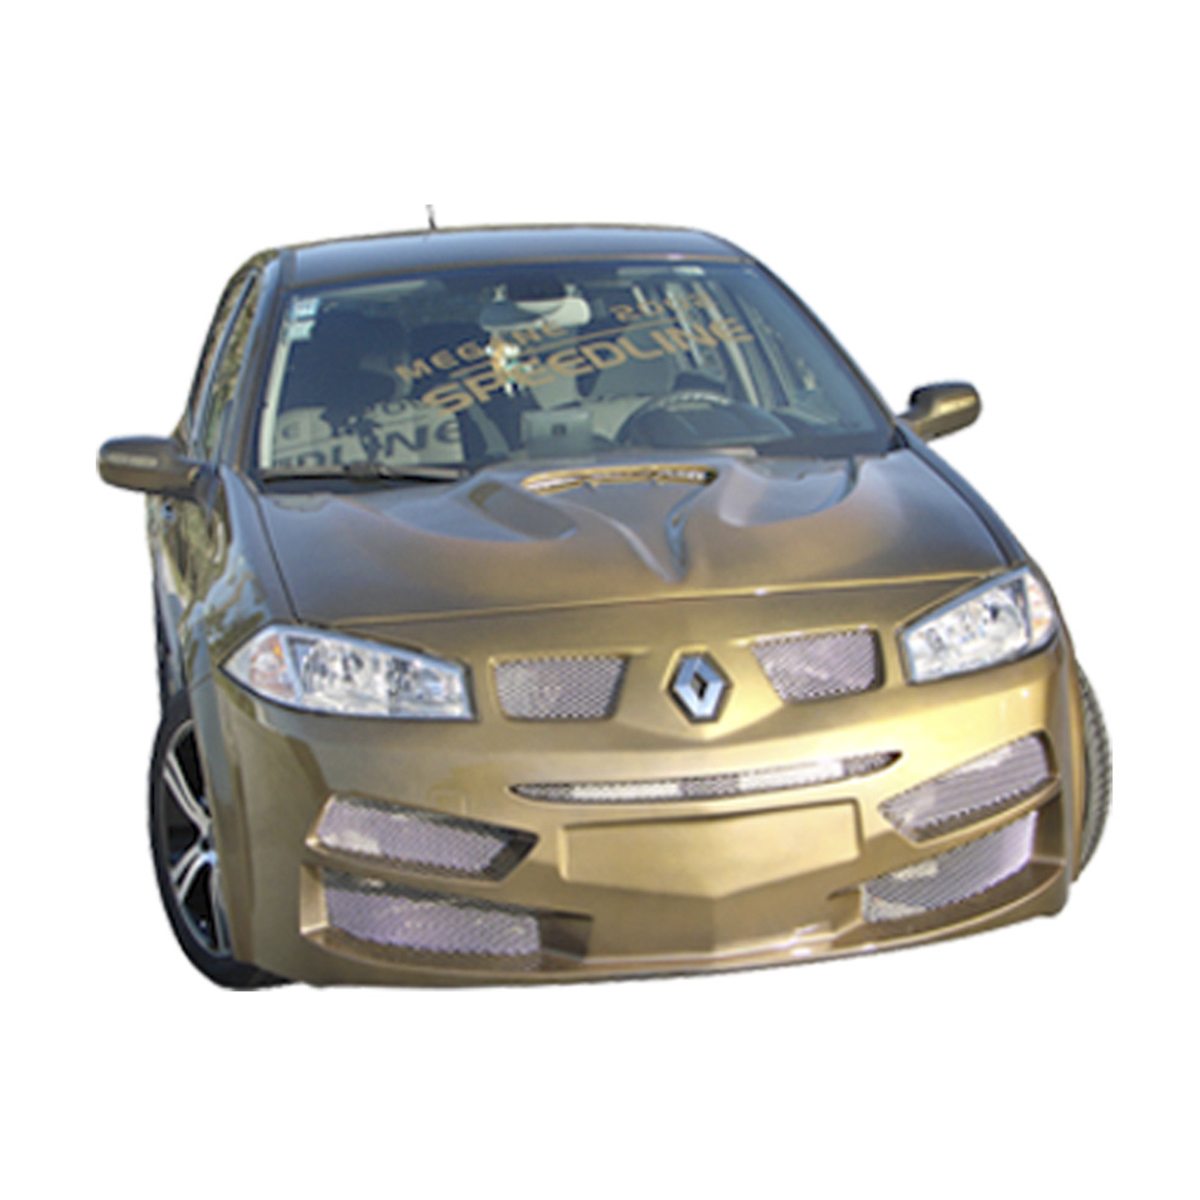 Renault-Megane-02-SpeedLine-Frt-PCS182